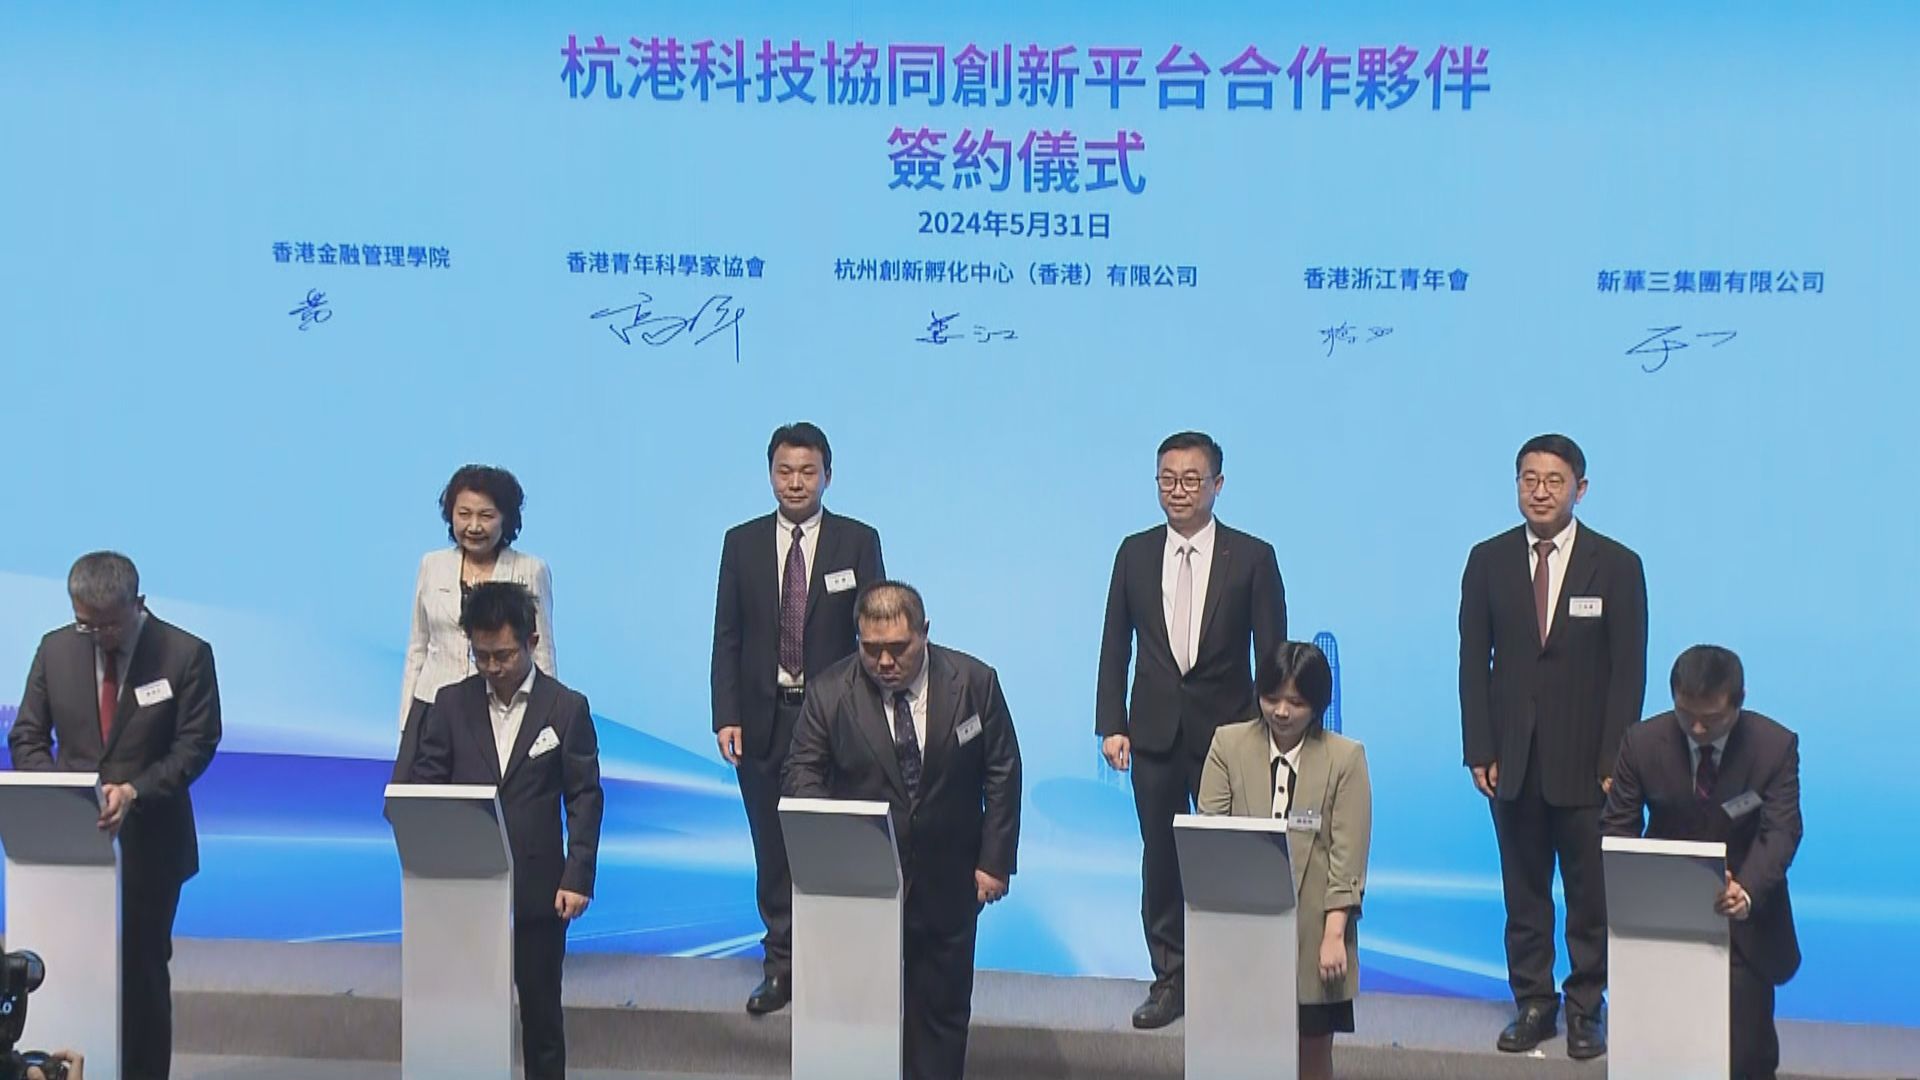 科技園公司與杭州創新孵化中心簽署戰略合作協議